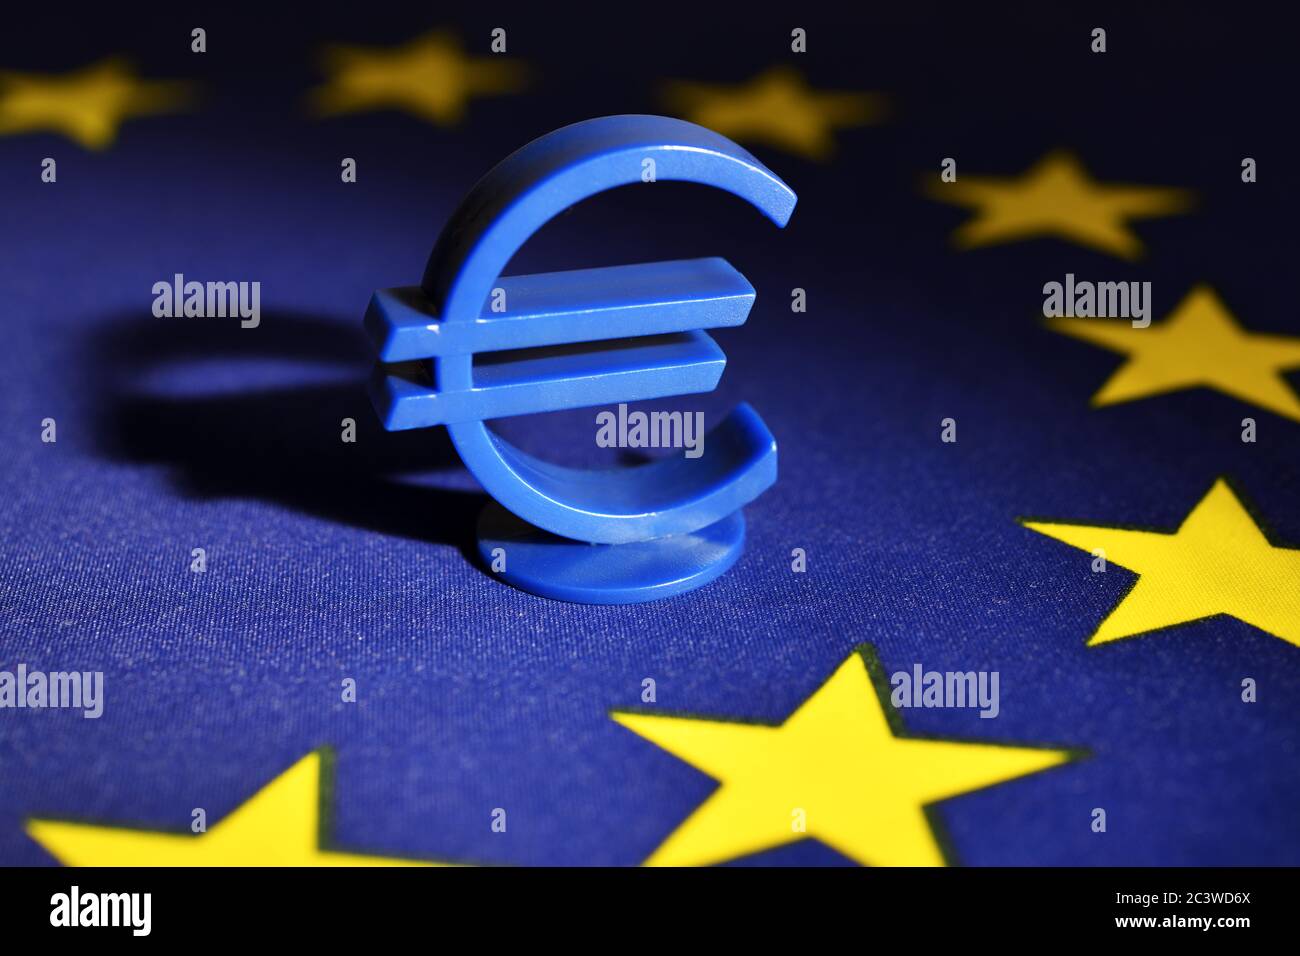 Firma del euro sobre la bandera de la UE, el Fondo de Reconstrucción de la UE y la ayuda de la UE, Eurozeichen auf EU-Fahne, EU-Wiederaufbaufonds und EU-Hilfen Foto de stock